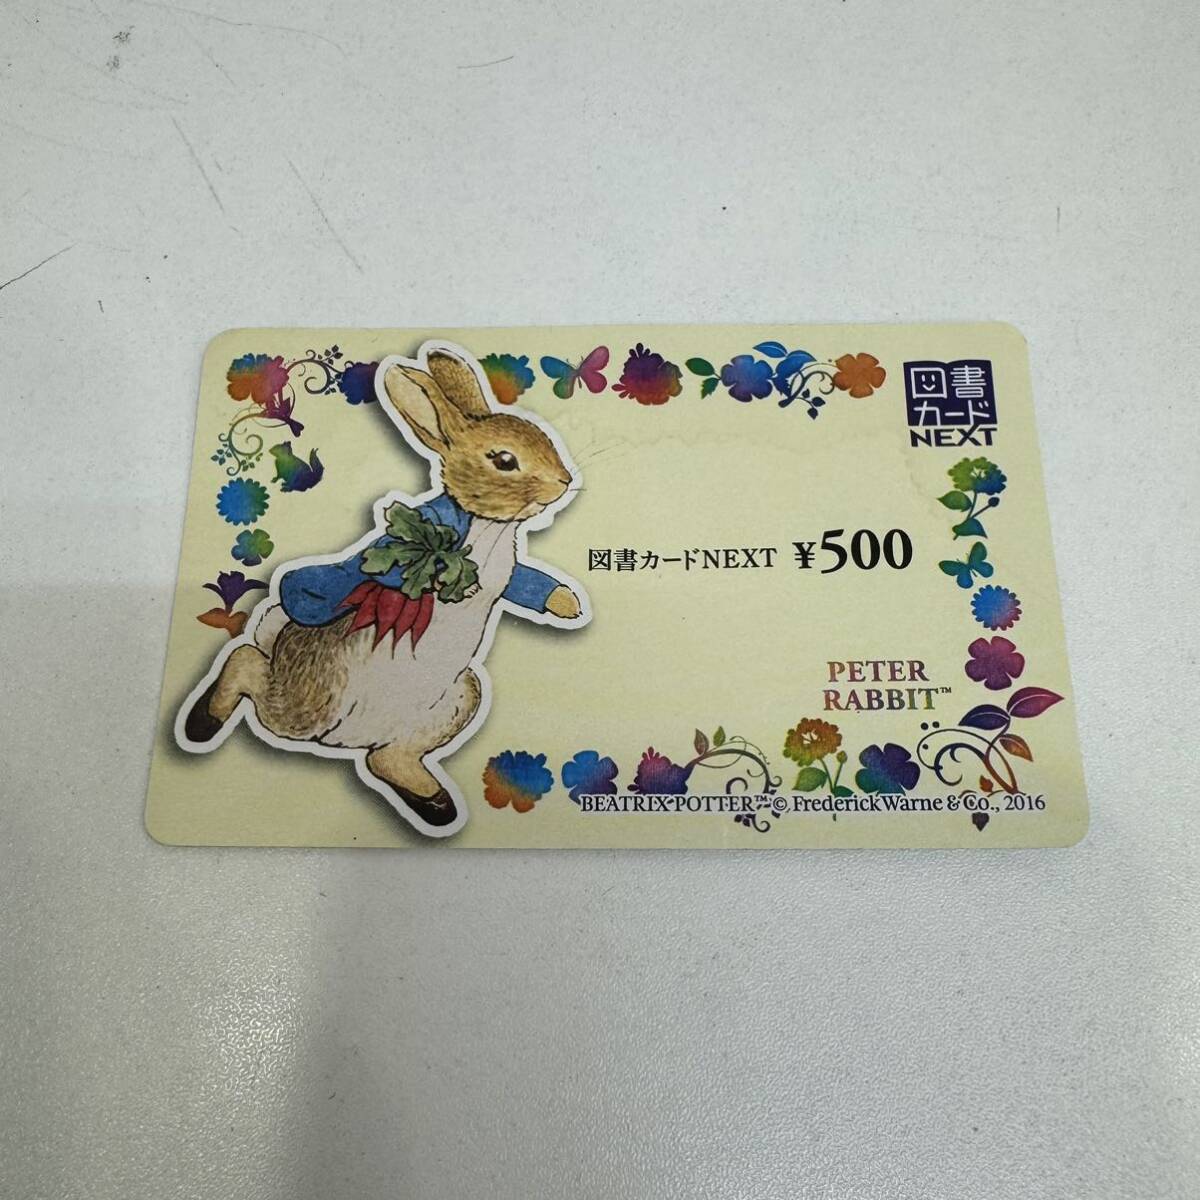 【TC0308】NEXT ネクスト 図書カード 500円 ピーターラビット プリペイドカード 金券 図書券 未使用 シミありの画像1